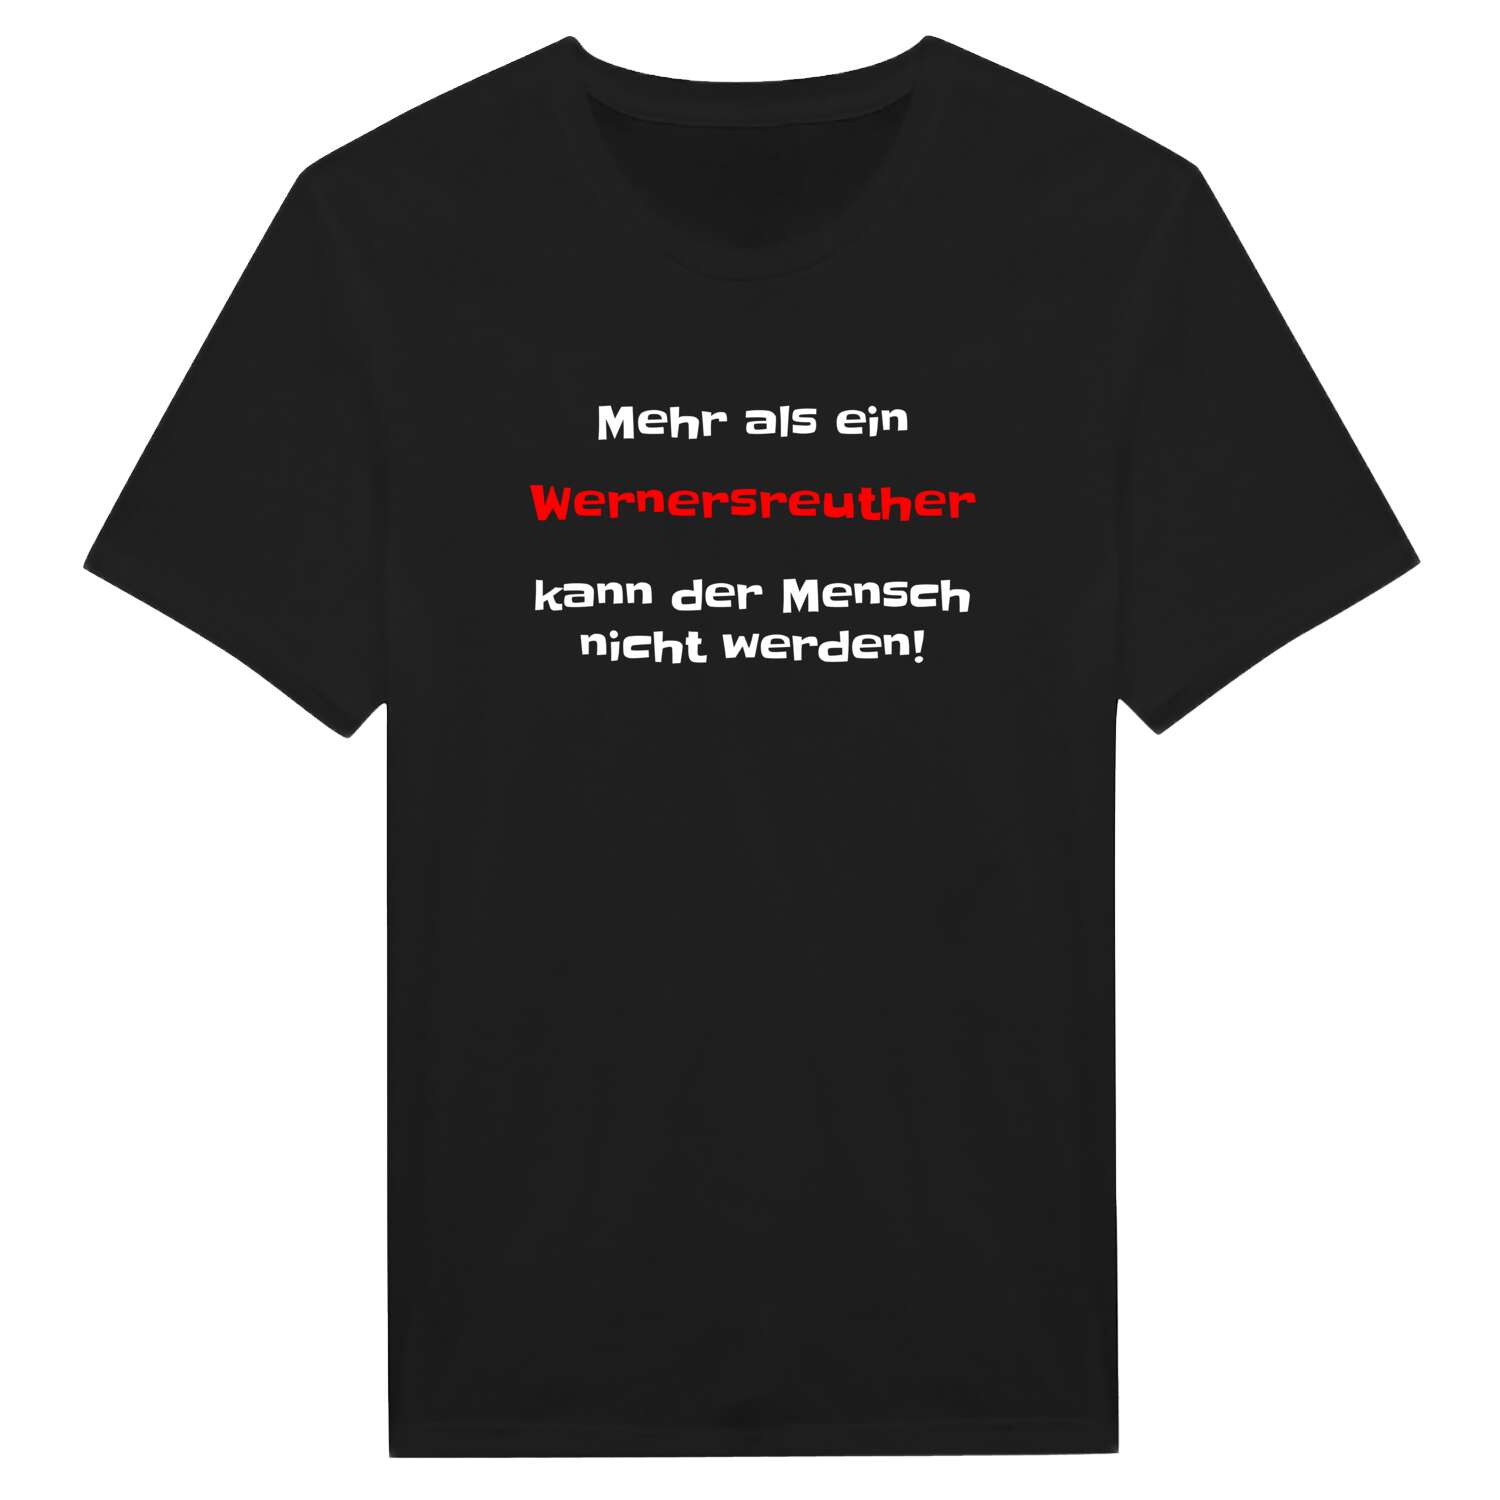 Wernersreuth T-Shirt »Mehr als ein«